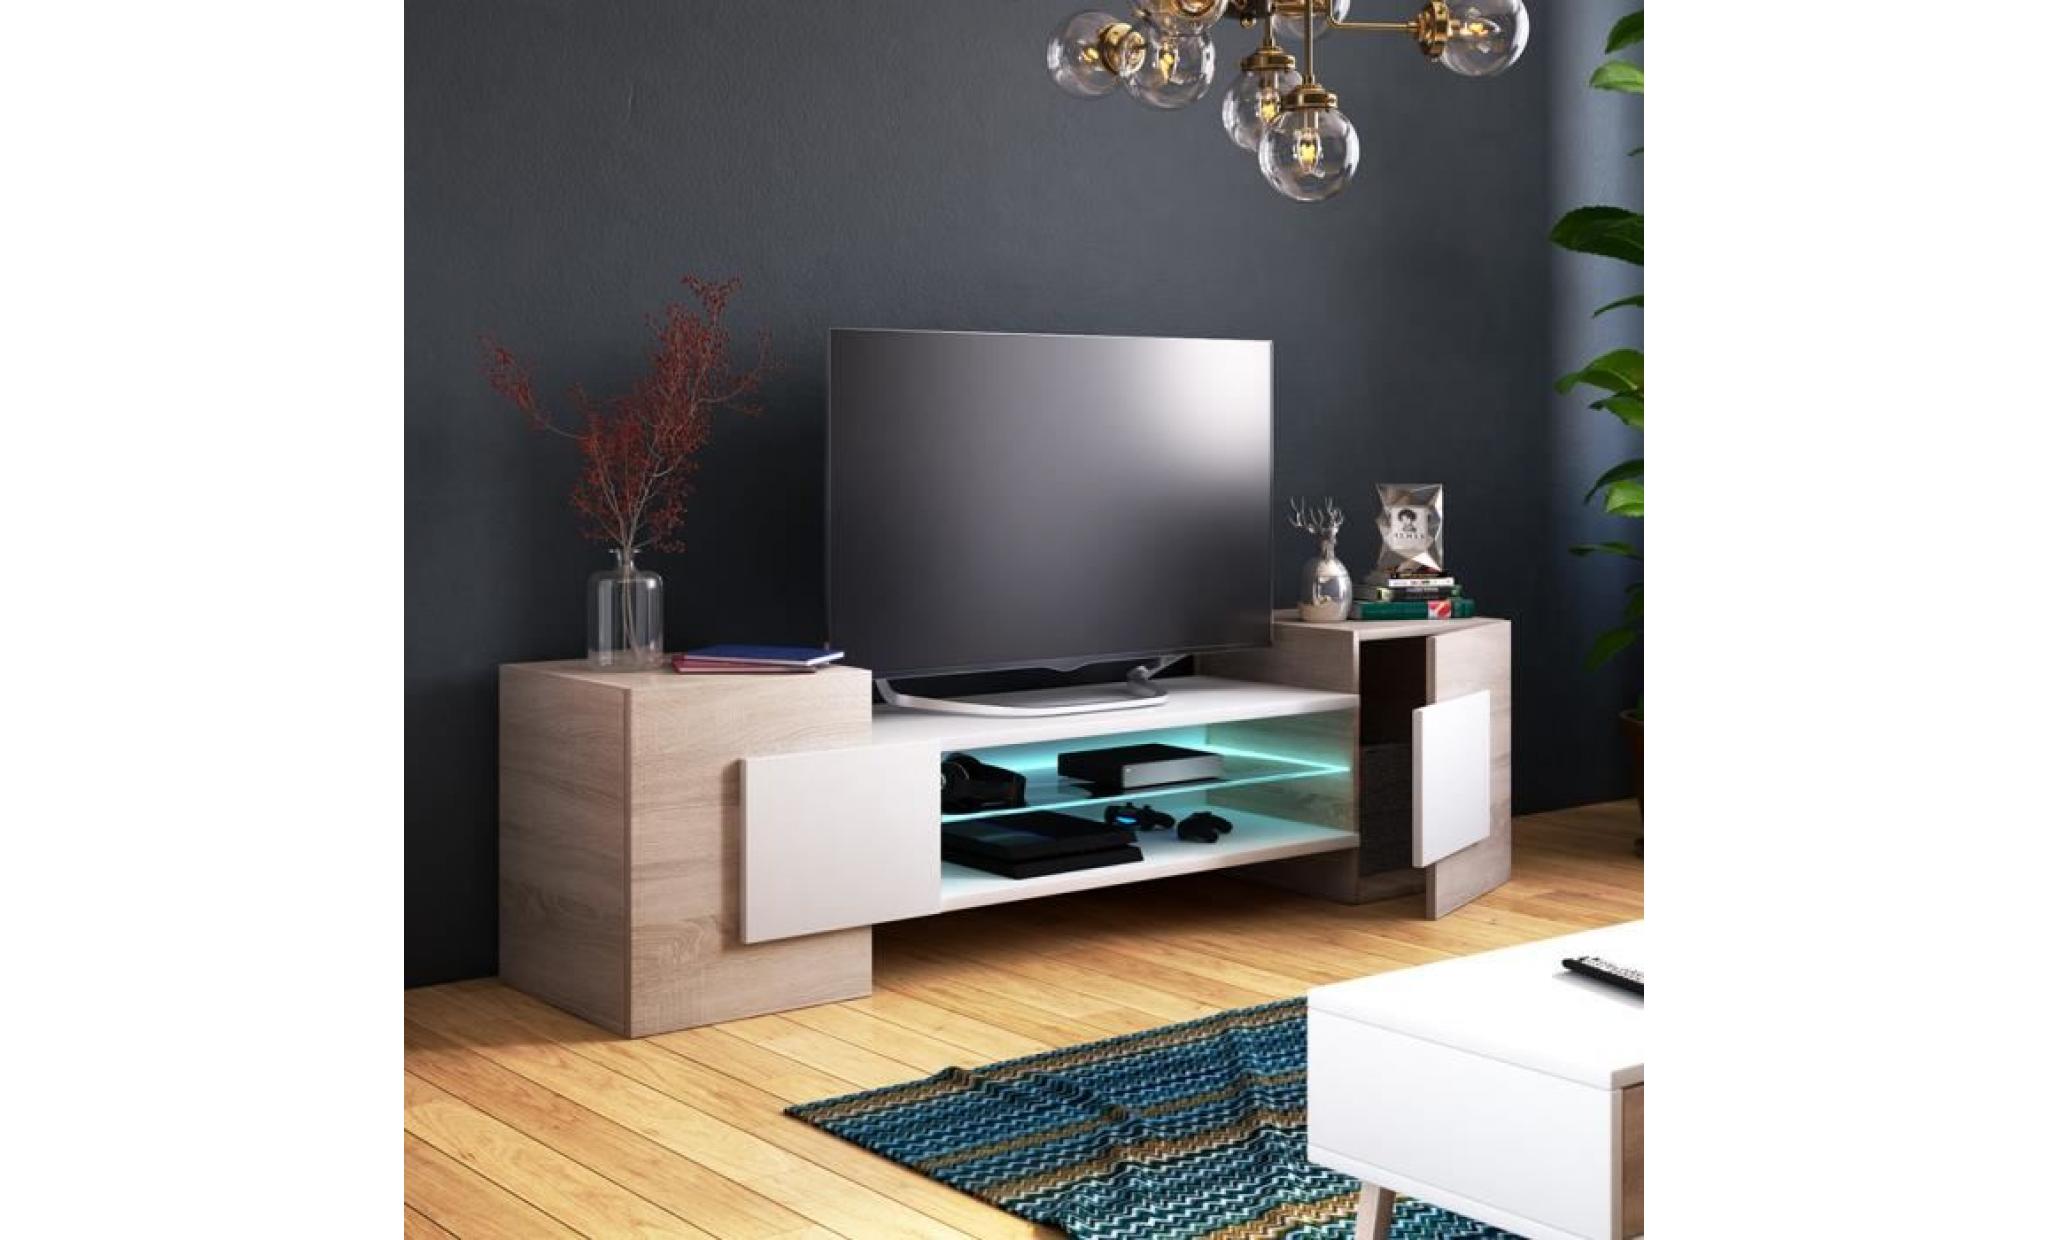 meuble tv / meuble de salon   charles   160 cm   effet chêne / blanc   sans led   style contemporain   design moderne